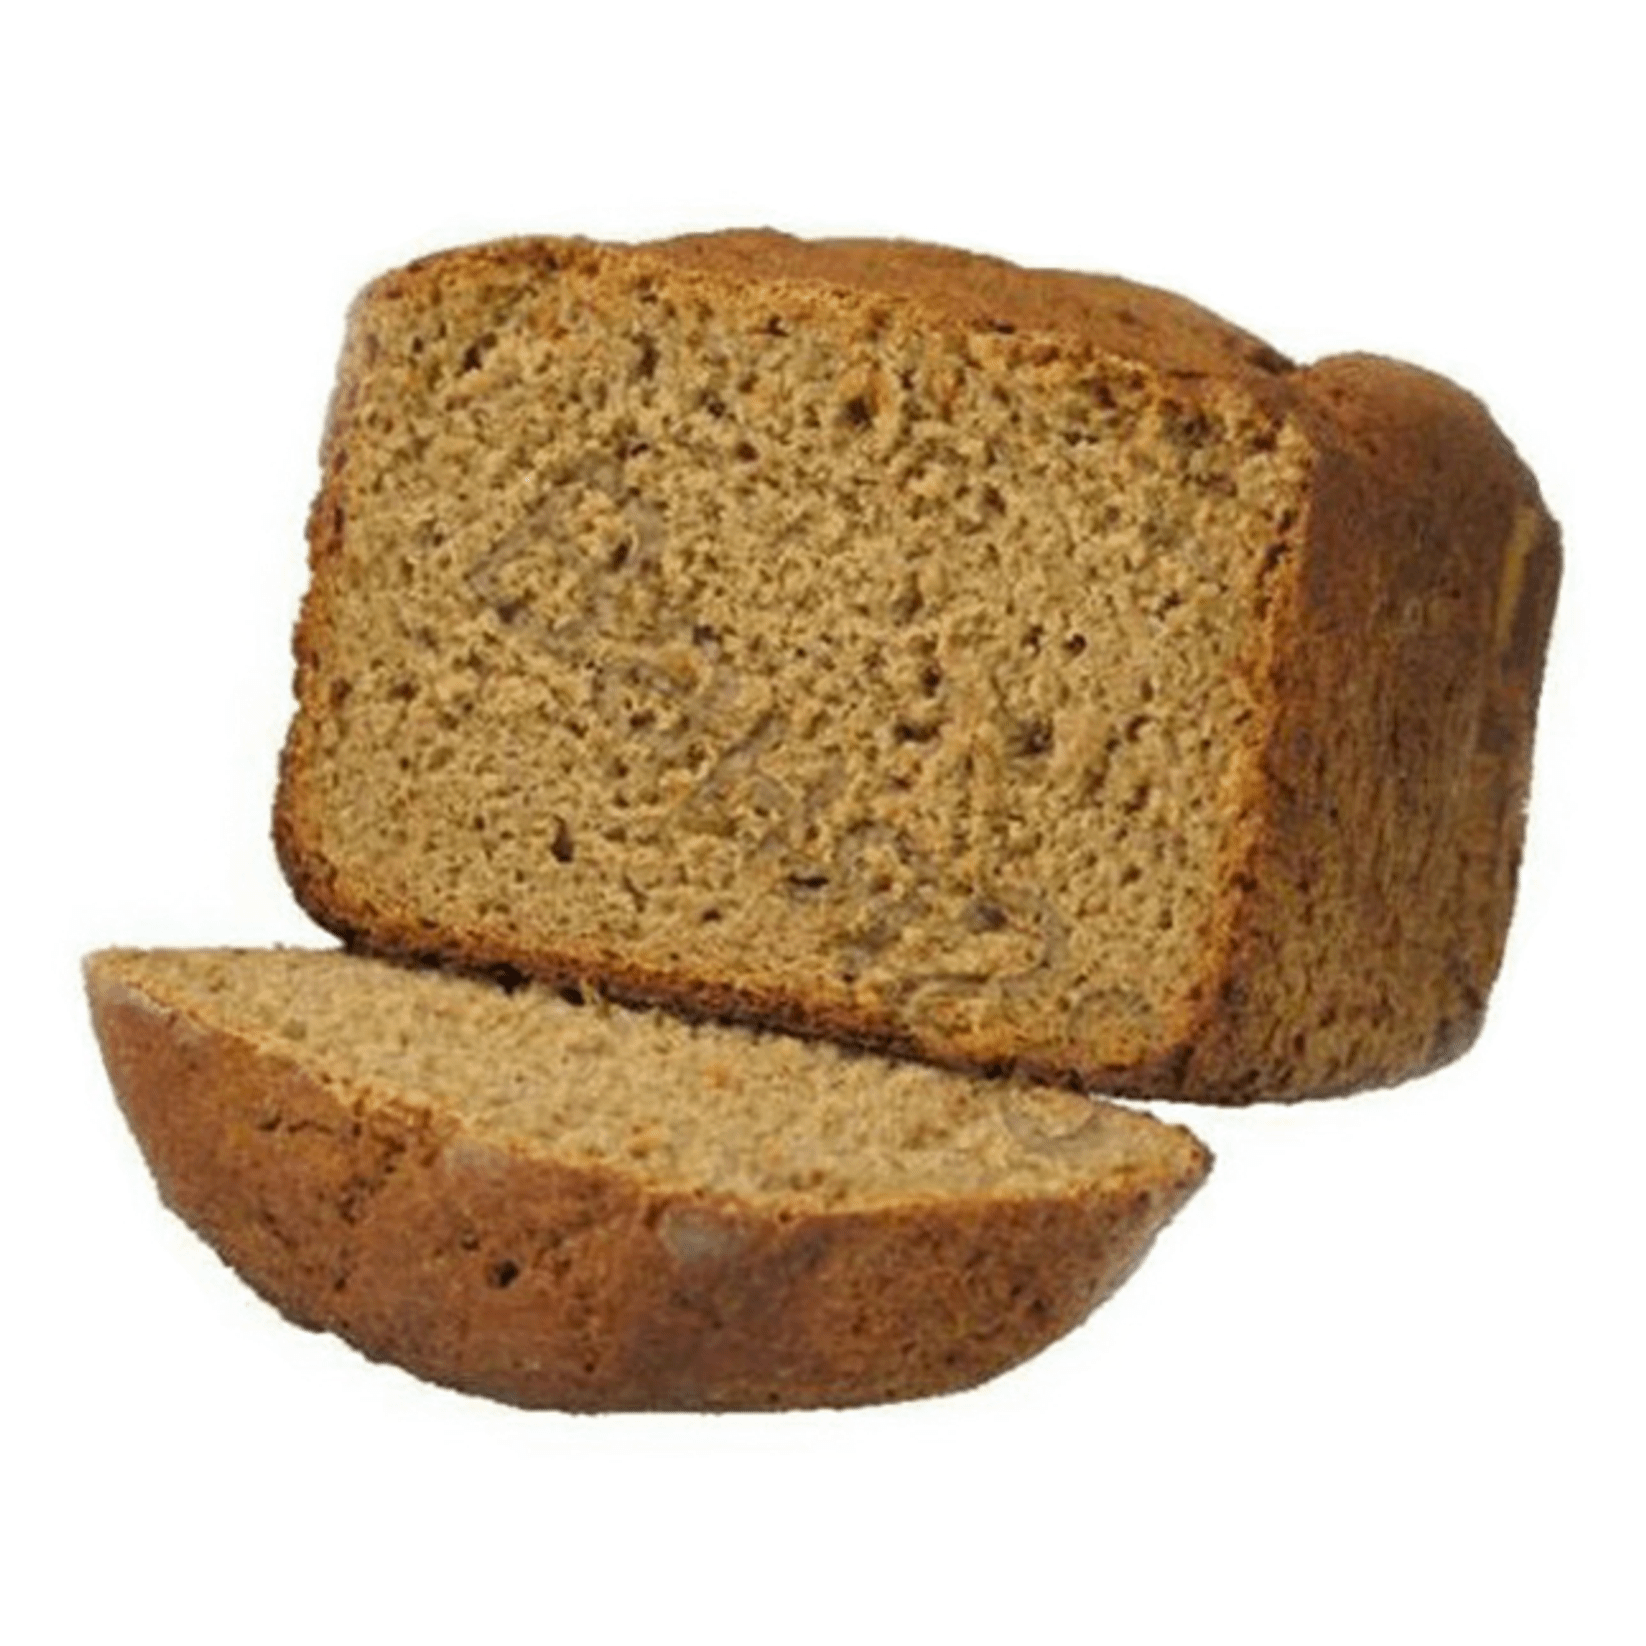 фото Хлеб авангард бабушкин печной пшеничный 60 г х 3 шт